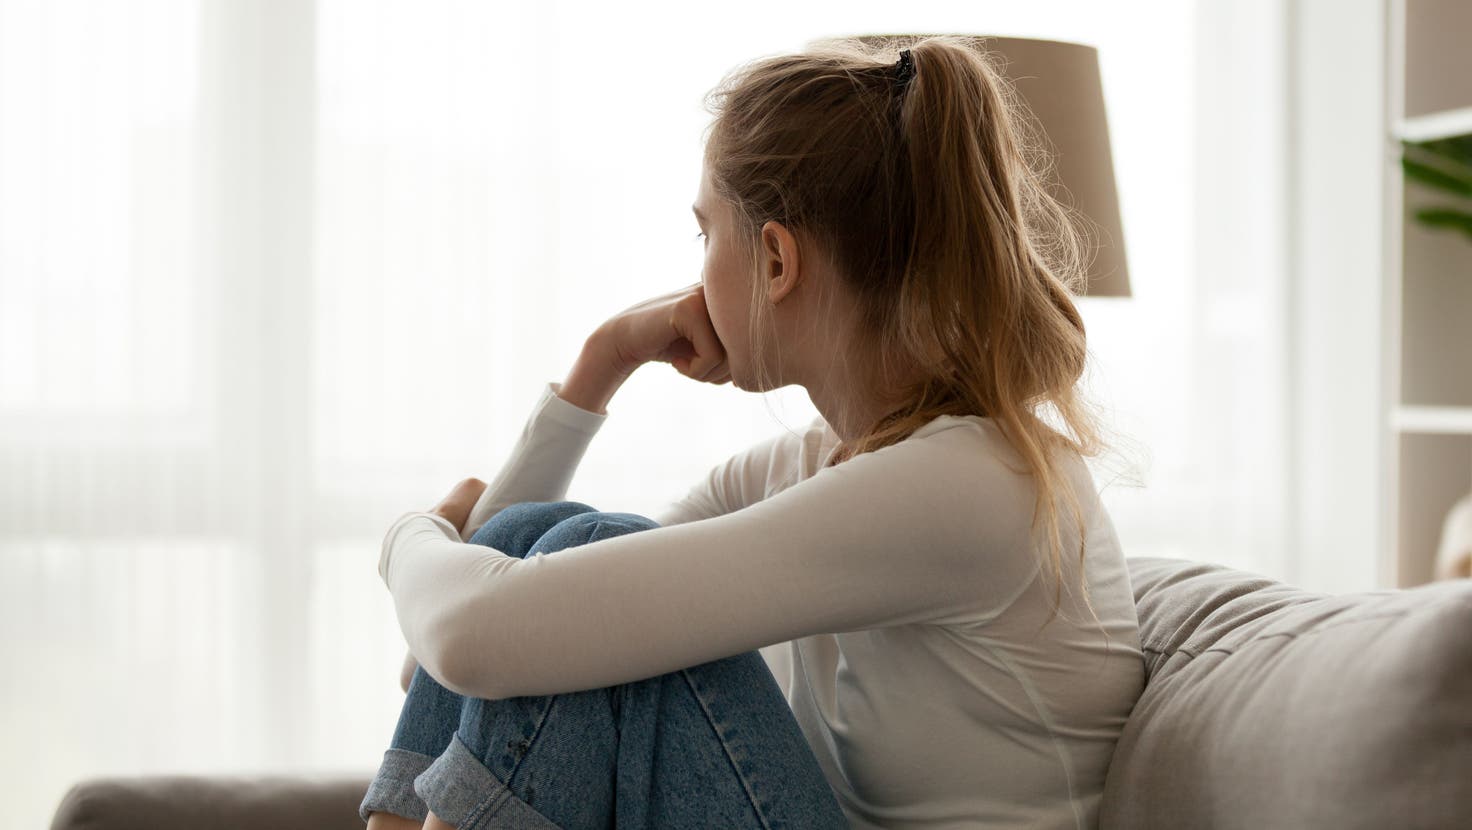 Psychische Störungen bei Jugendlichen und Kindern nehmen zu. Jeder dritte junge Mensch zwischen 14 und 24 Jahren leidet unter schweren depressiven Symptomen. (Bild: Getty)